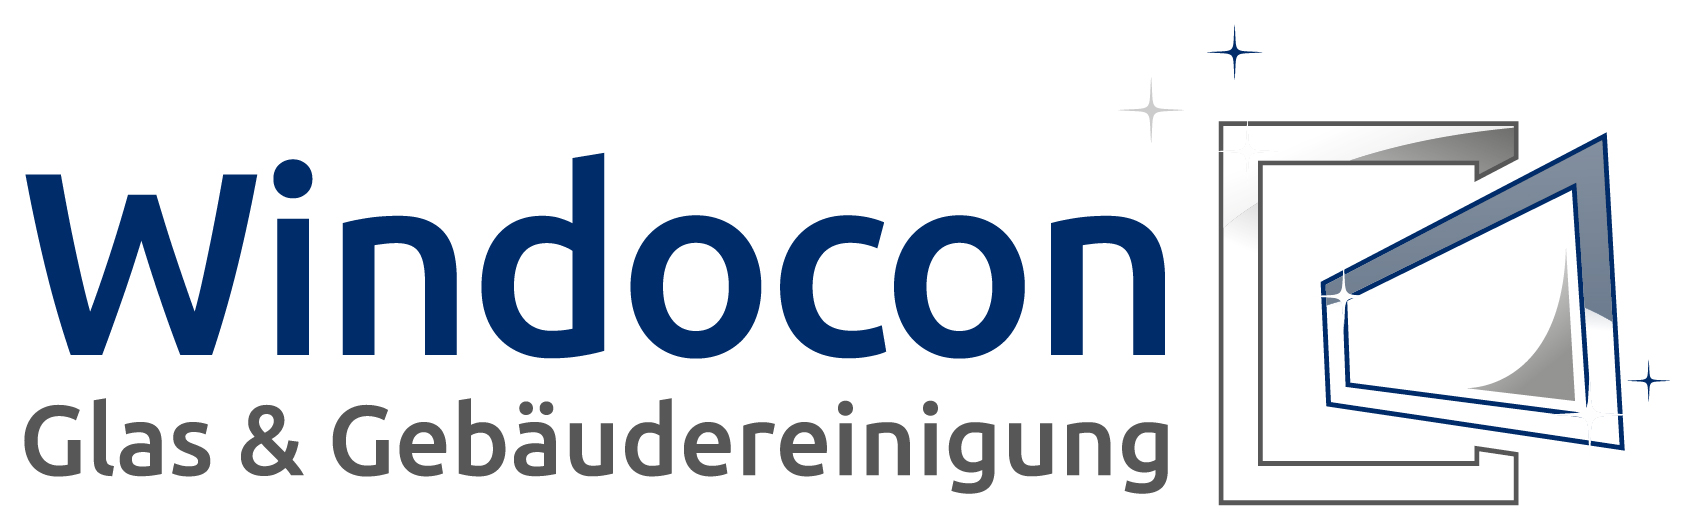 Logo von Windocon Glas & Gebäudereinigung